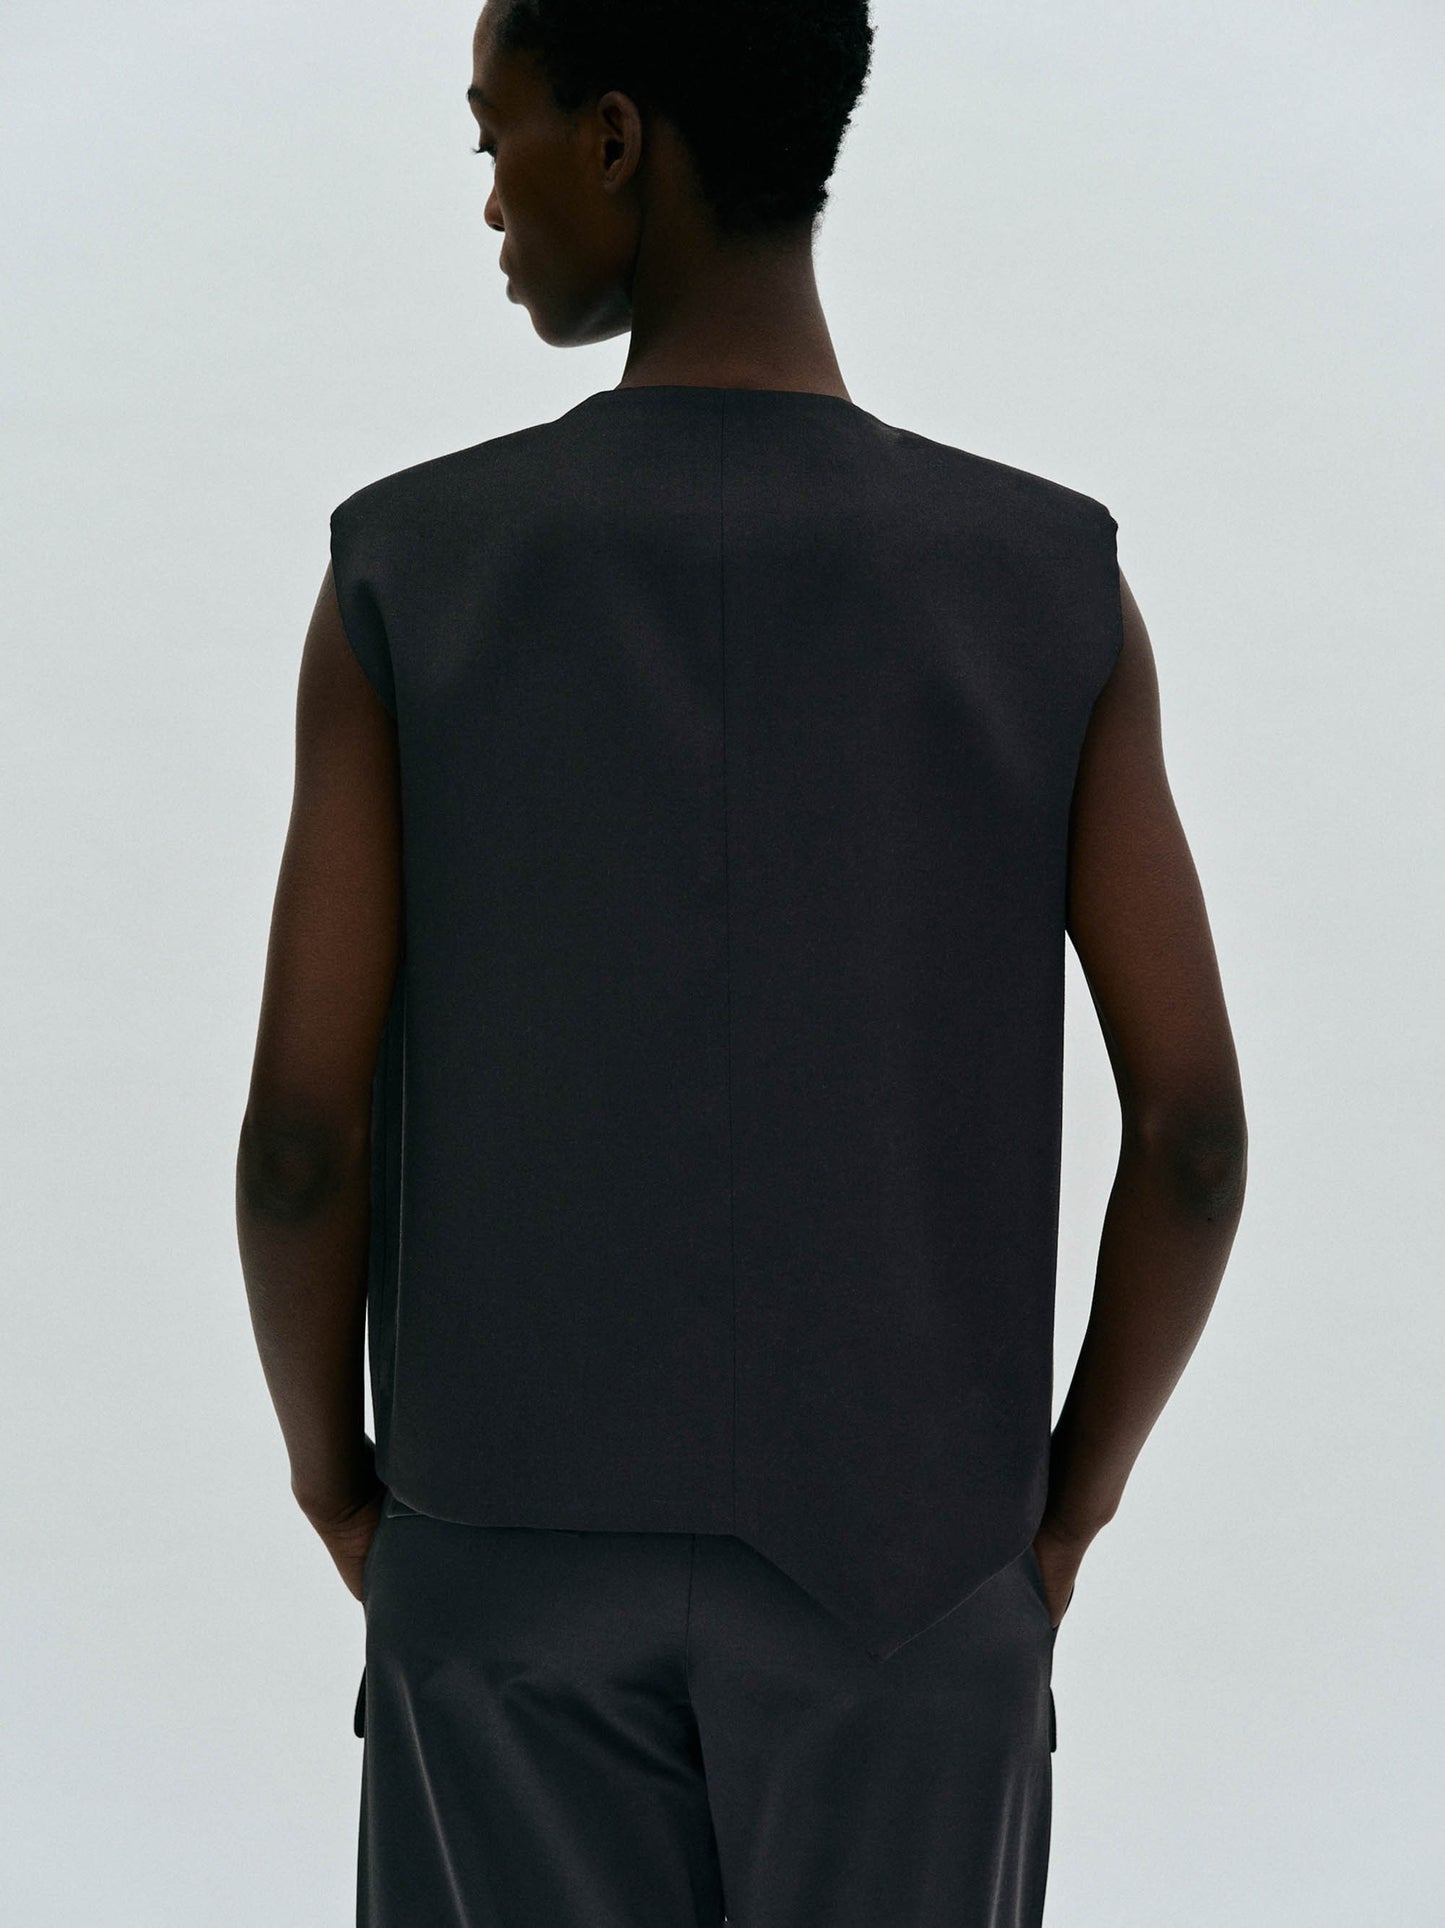 Asymmetric Suiting Vest, Black